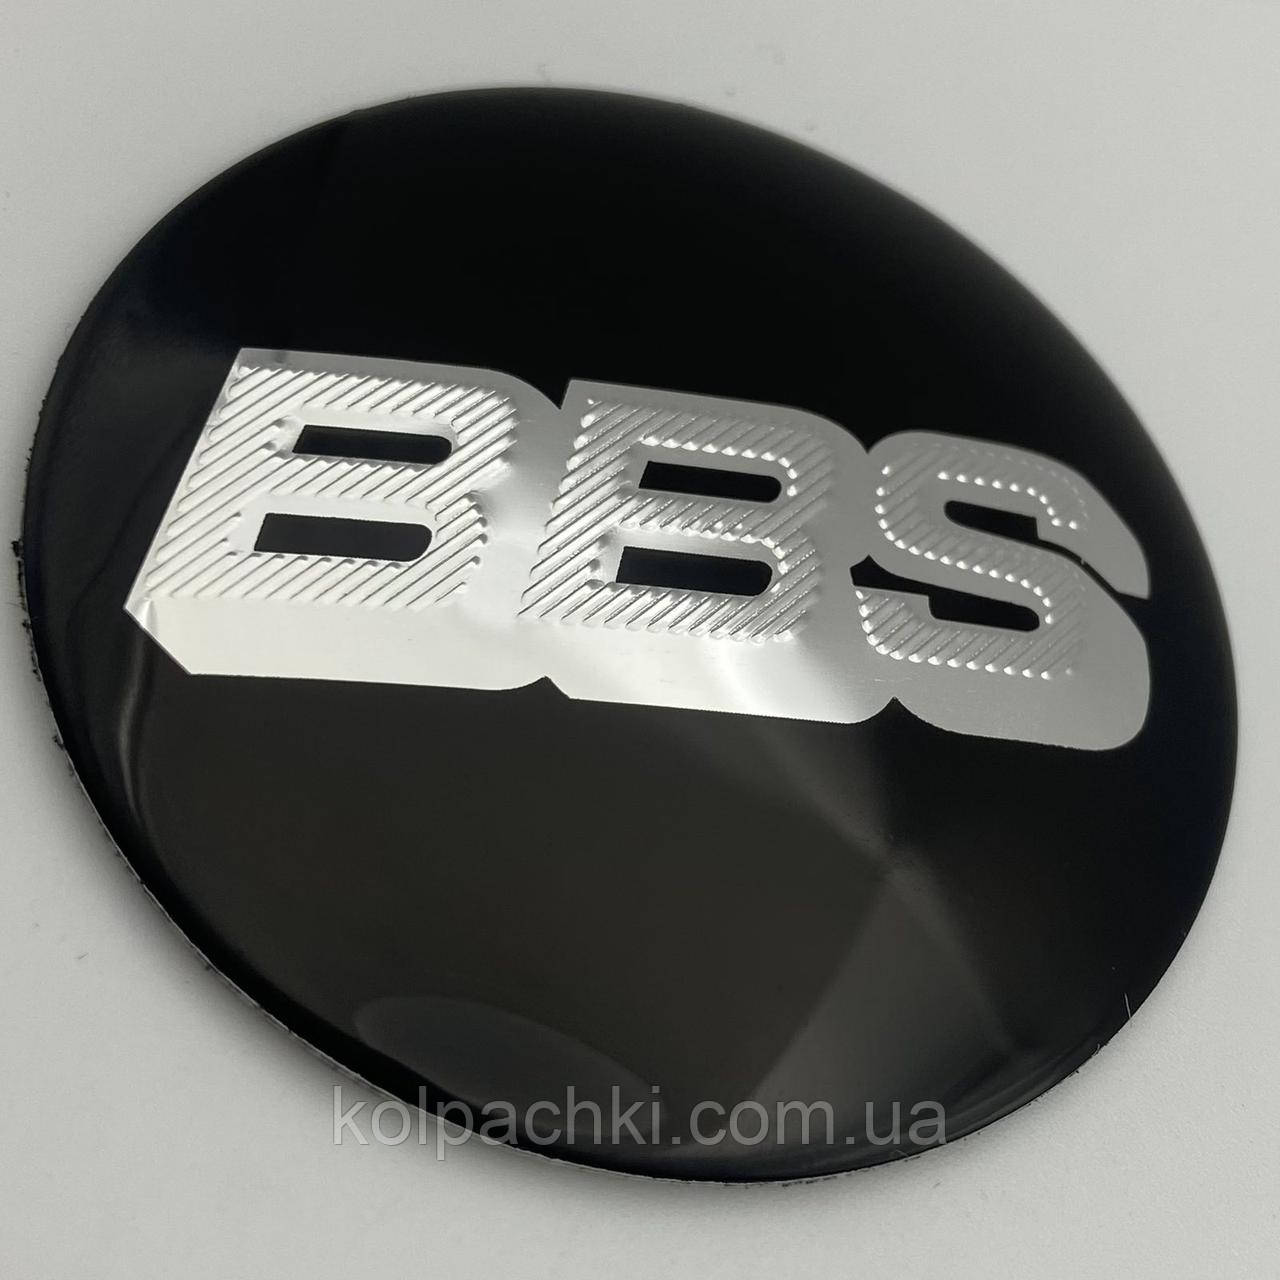 Наклейка для ковпачків із логотипом BBS ББС 56 мм